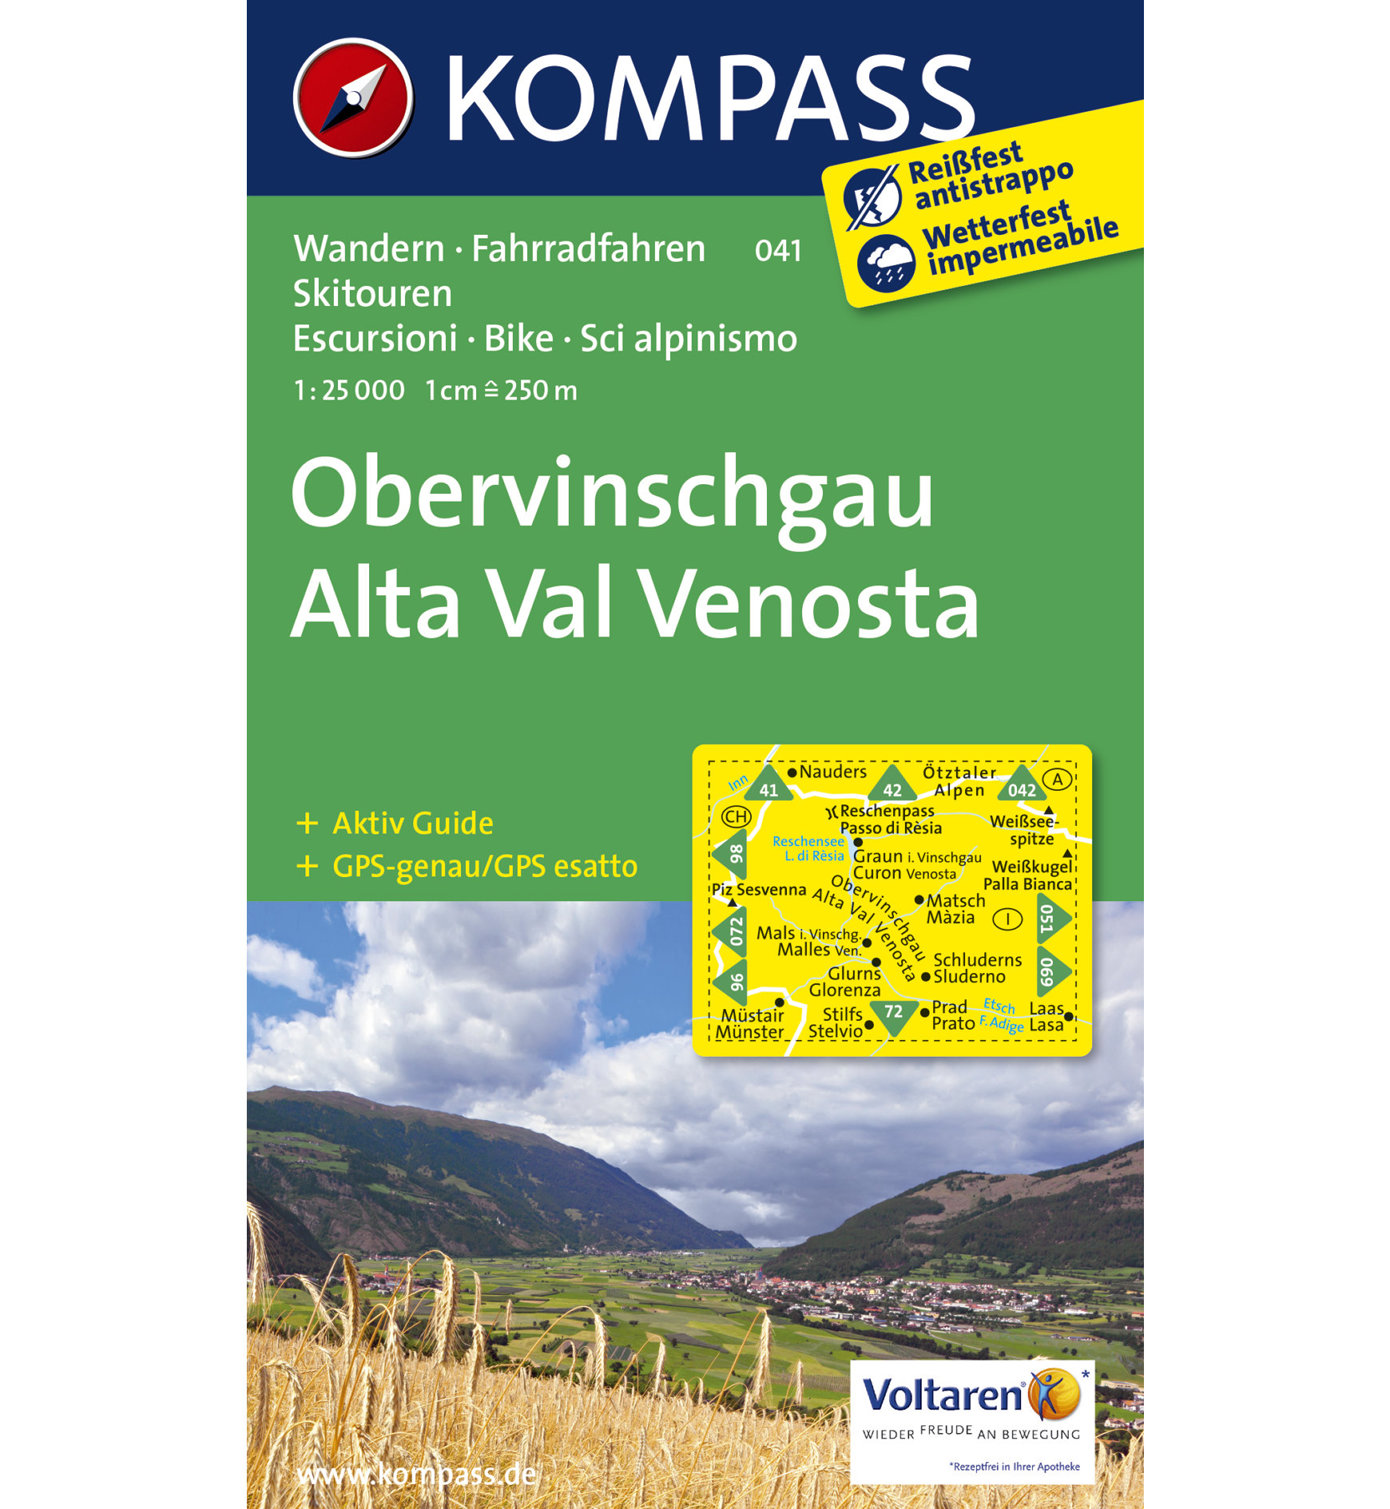 Kompass Karte Nr. 041 Obervinschgau | Sportler.com